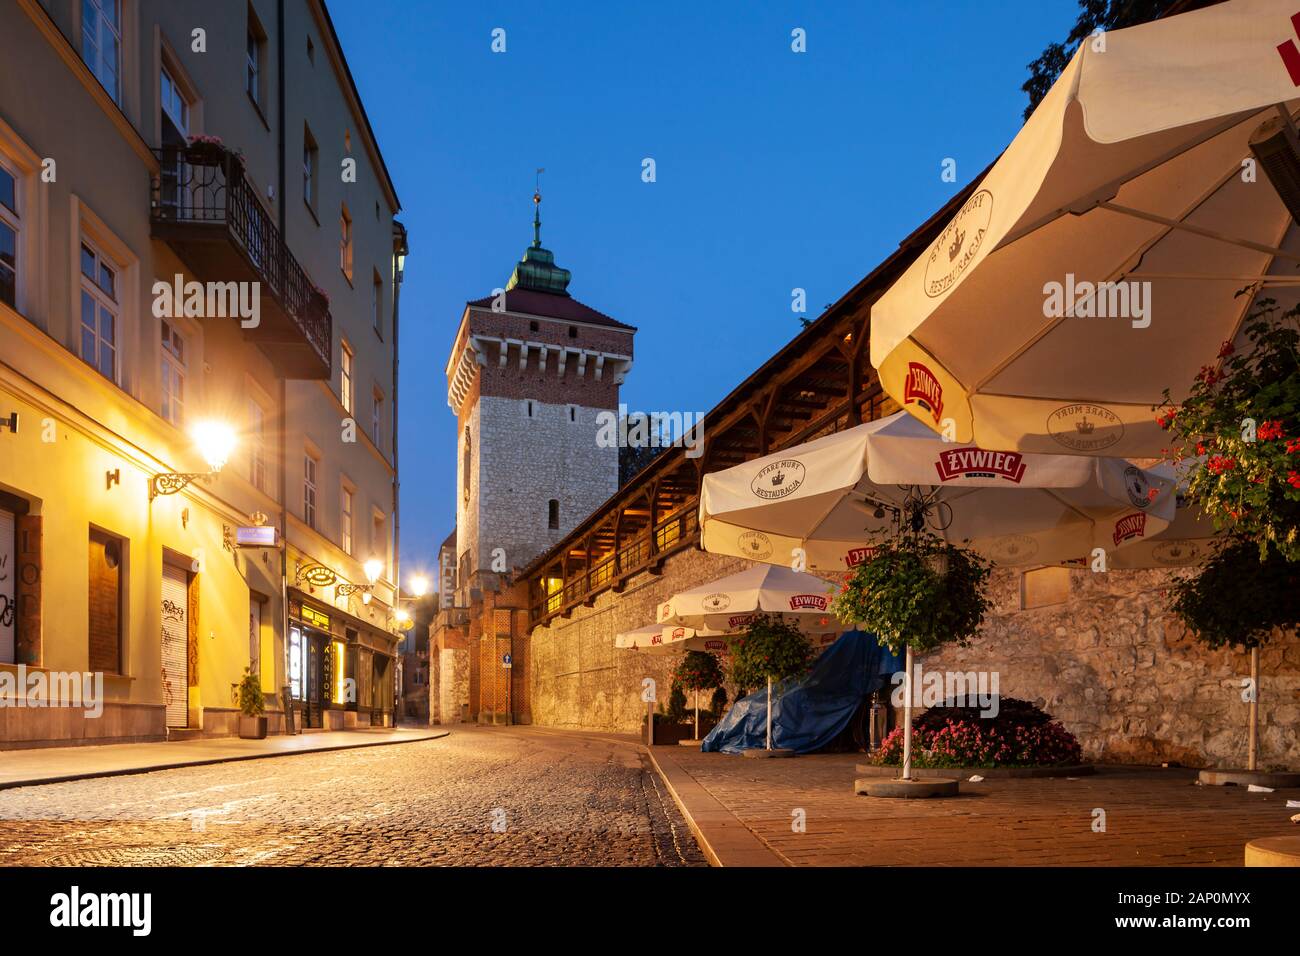 Alba nella citta' vecchia di Cracovia. Foto Stock